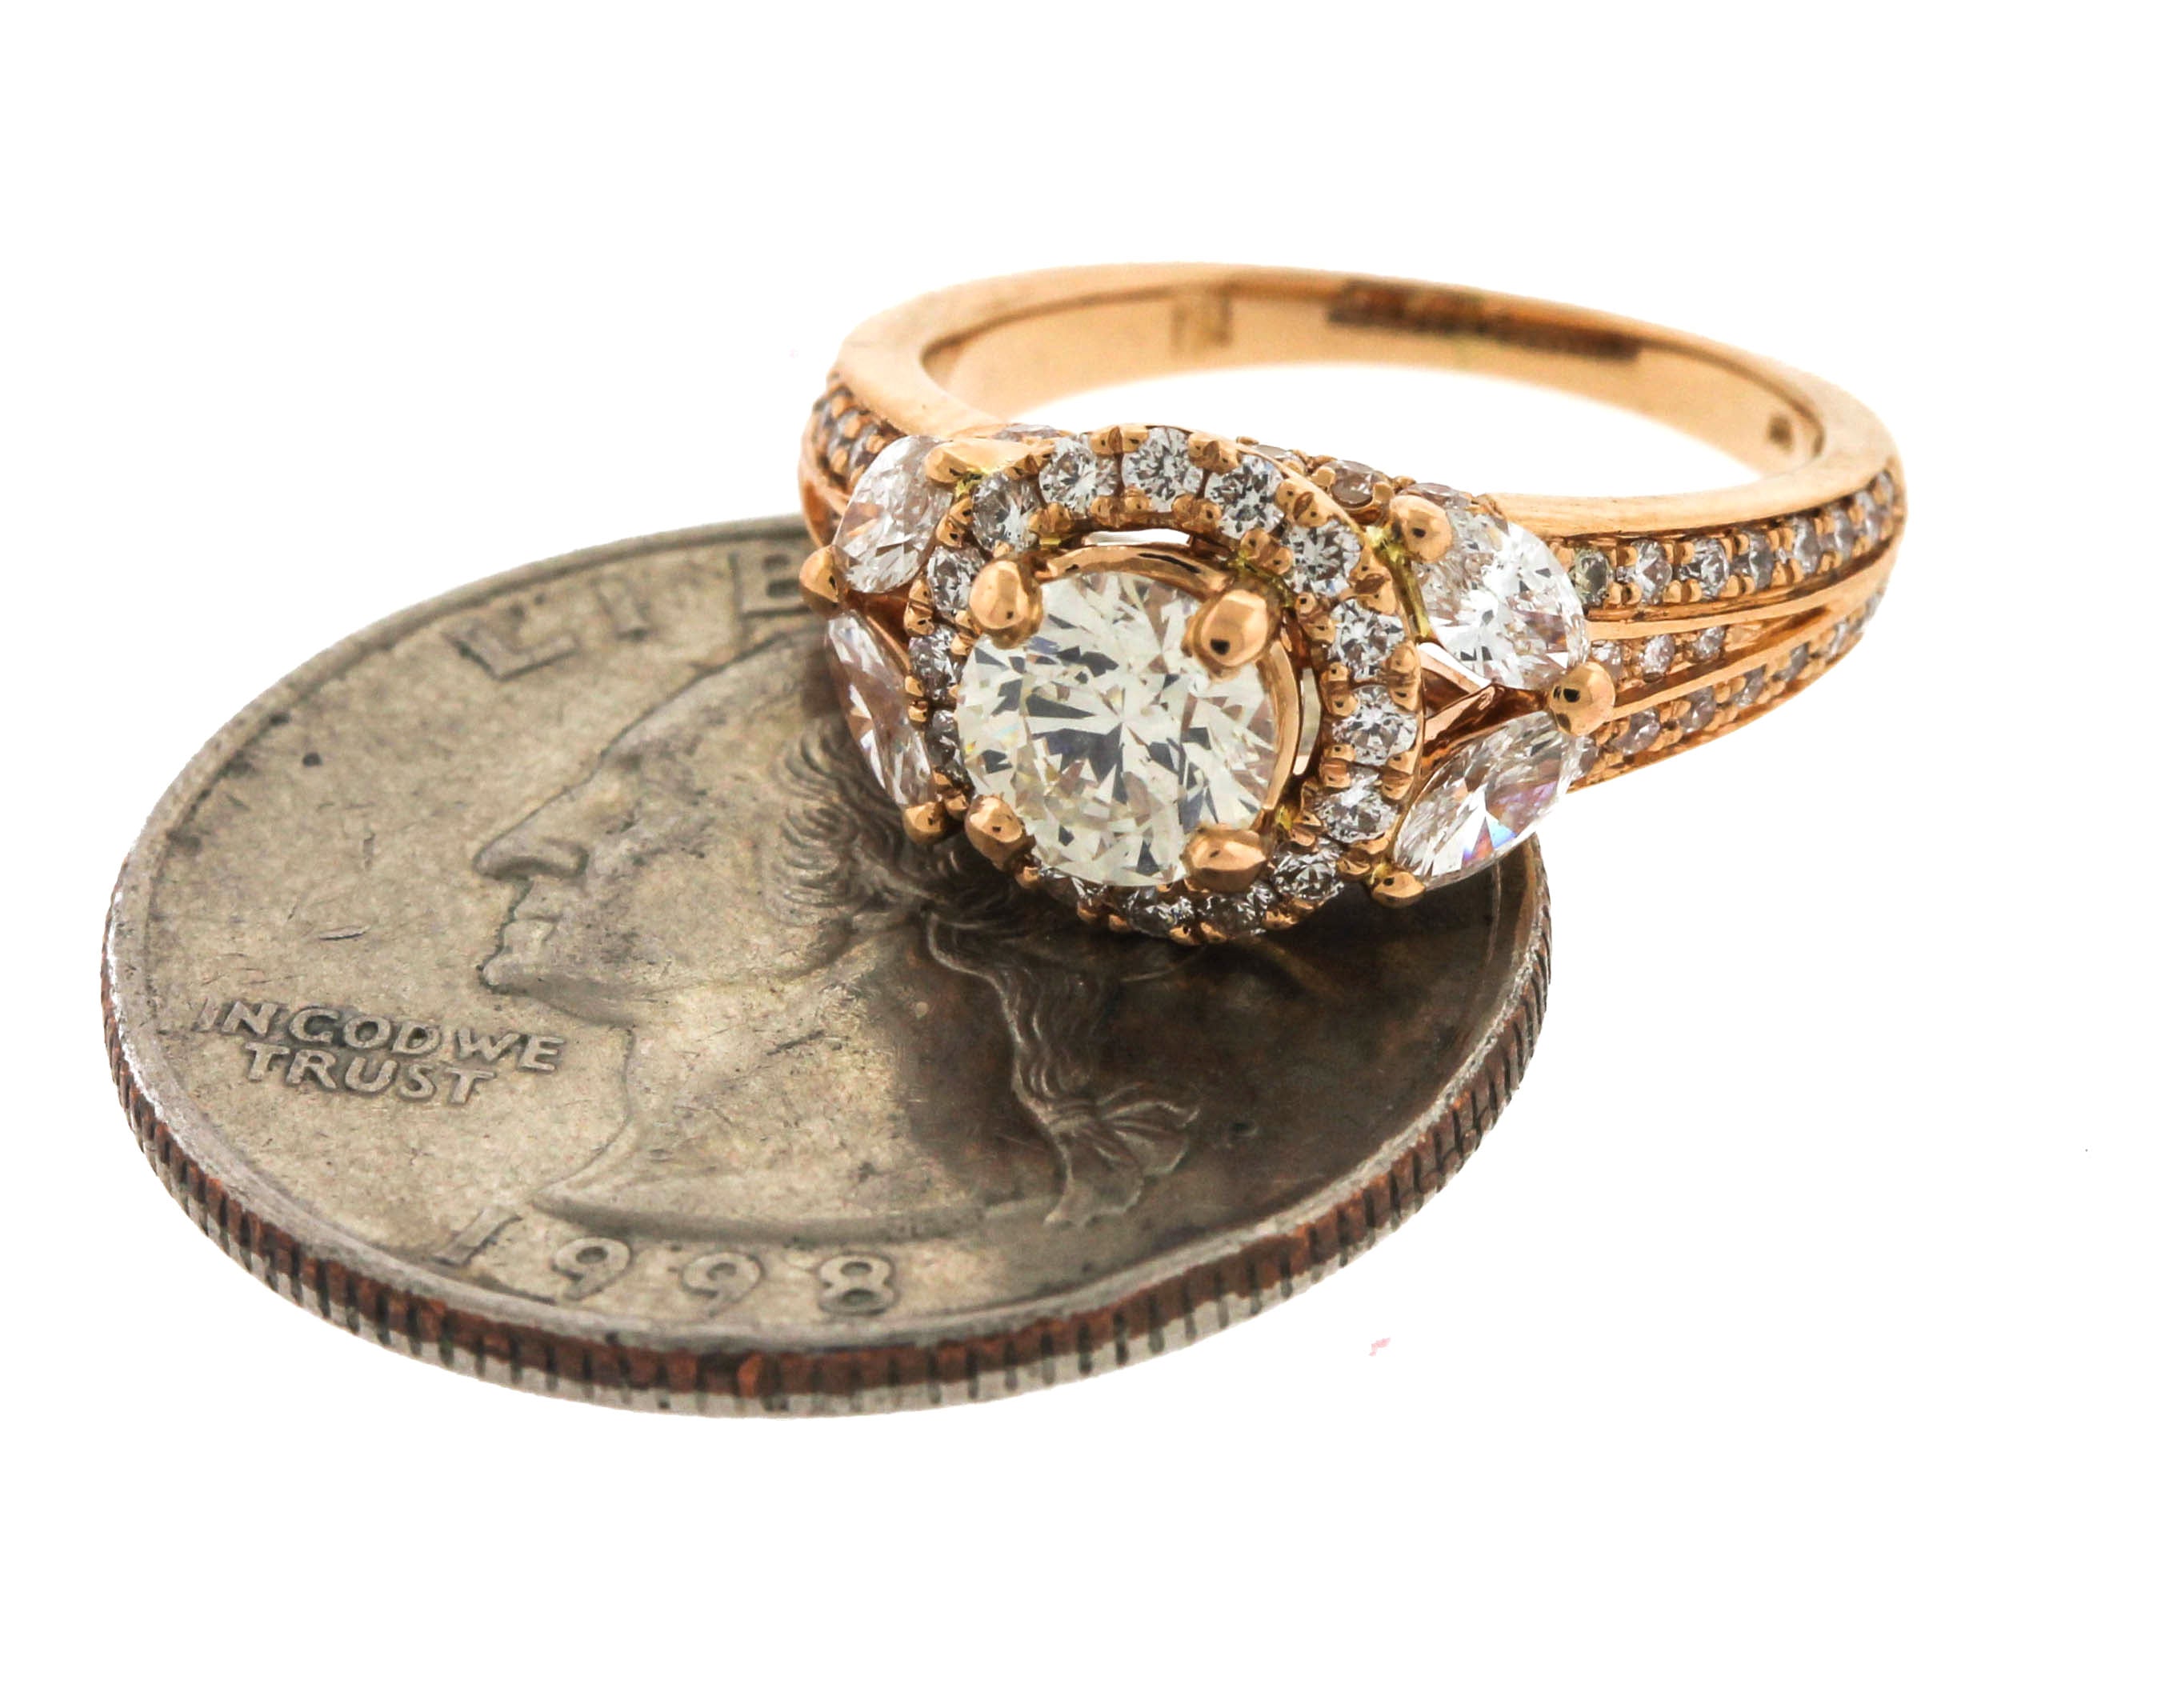 Stunning 18K Rose Gold 1.66ctw Diamond Engagement Ring GIA